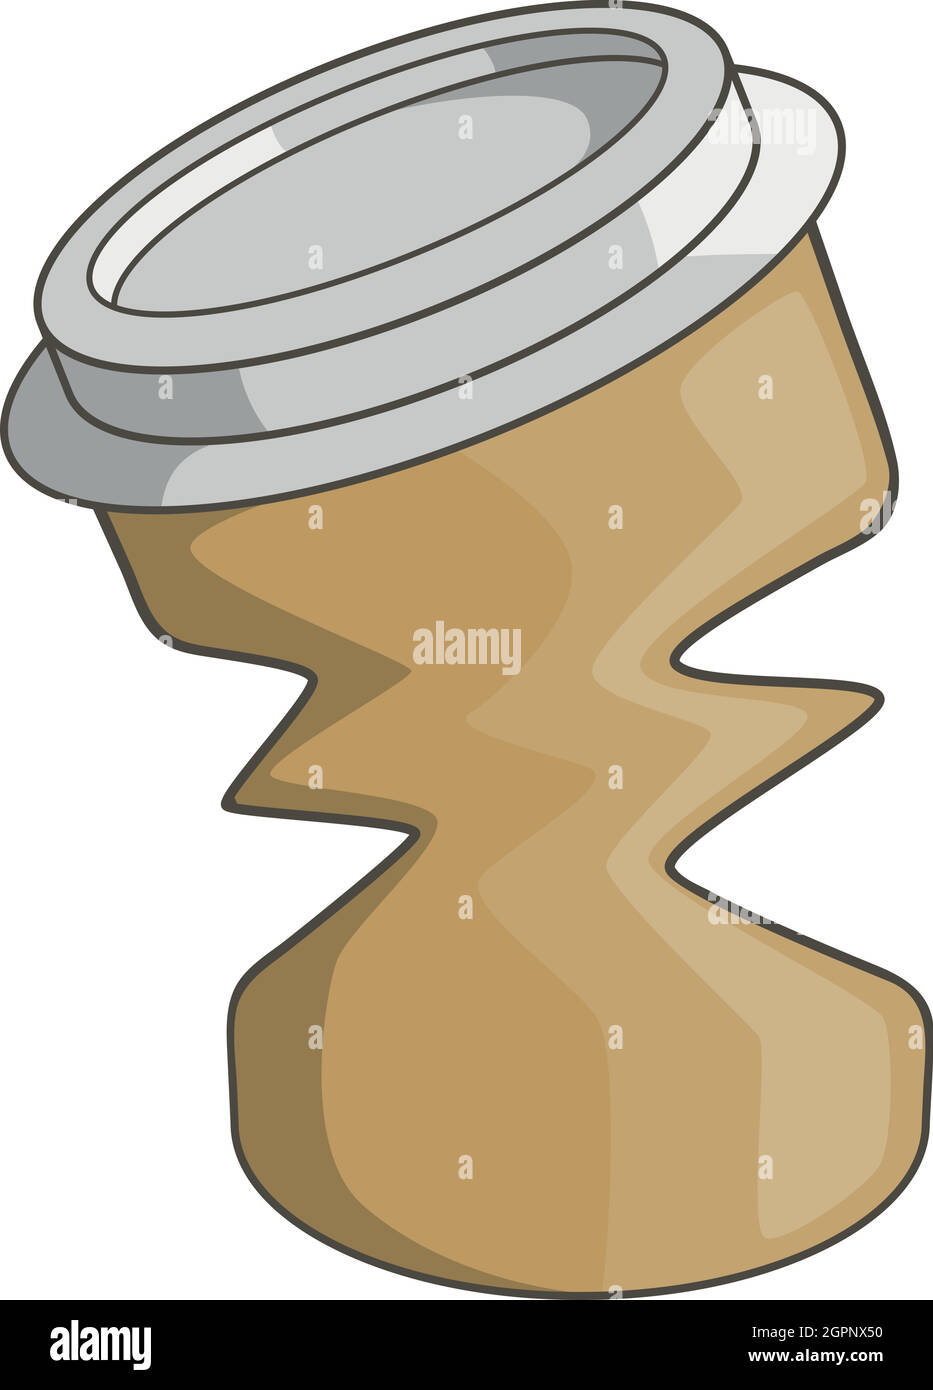 Vaso de papel de café para llevar en estilo de dibujos animados